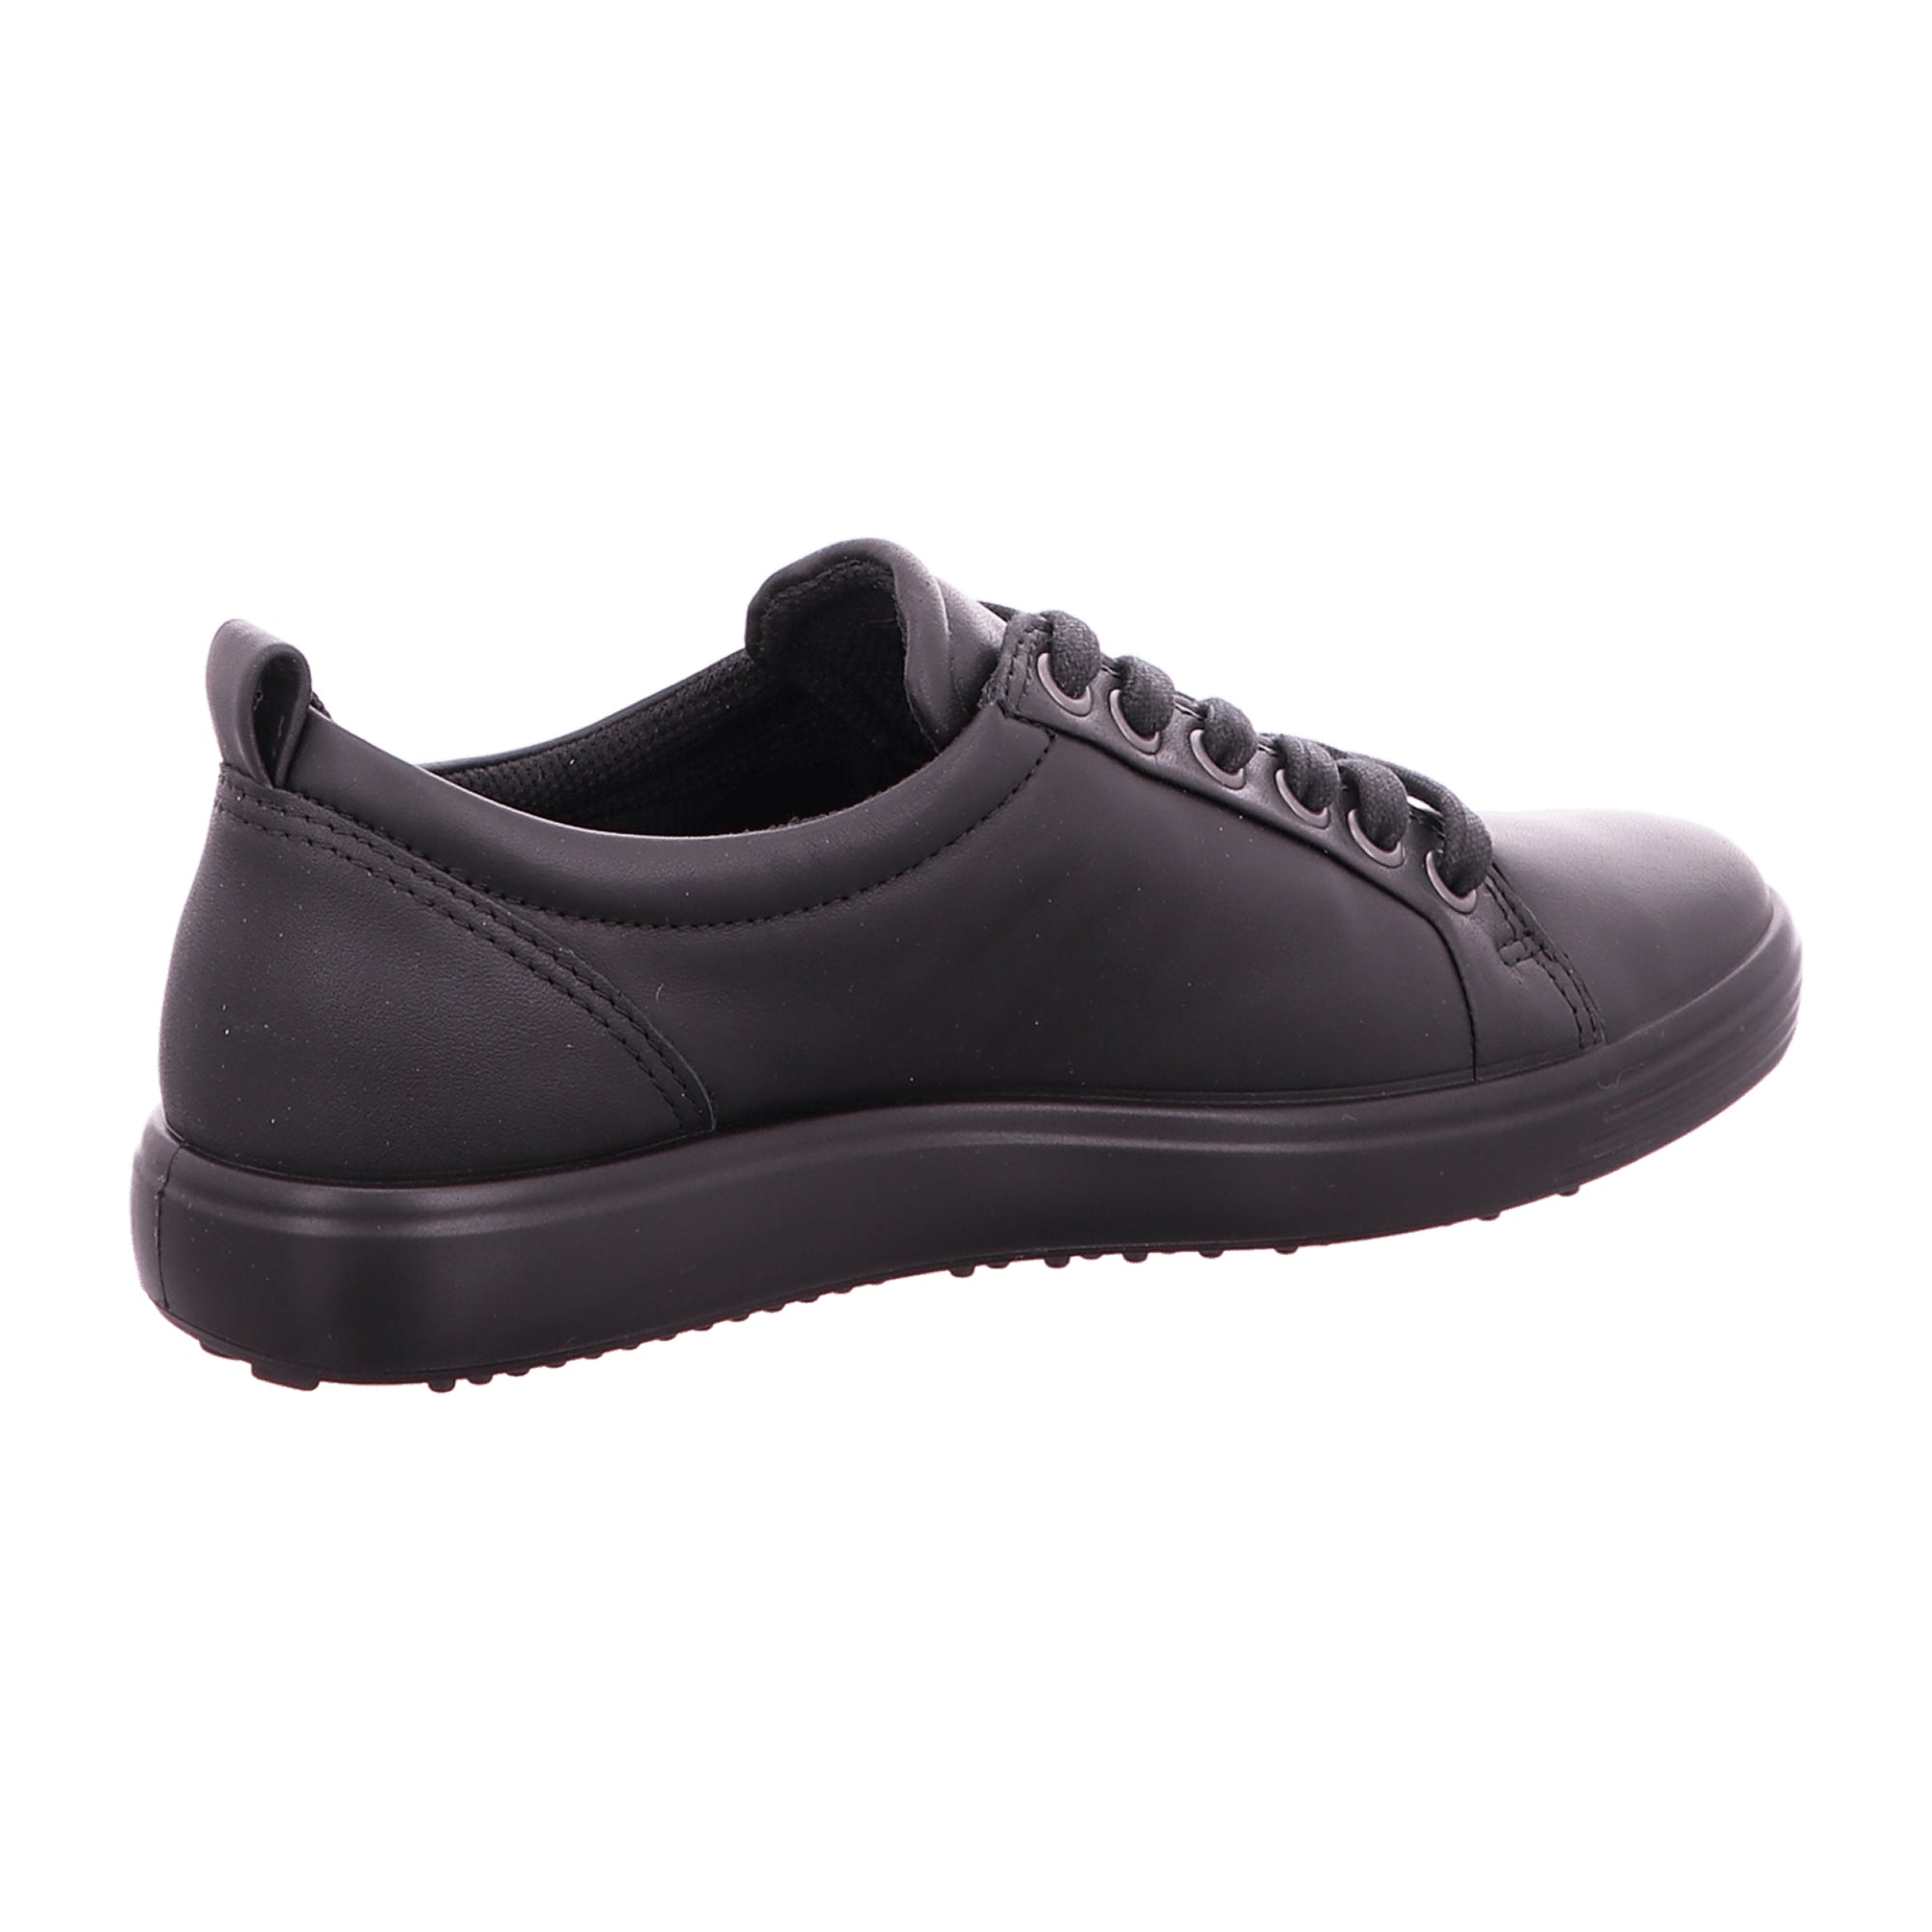 Ecco Soft 7 Women's Black Sneakers - GORE-TEX Waterproof, Breathable Footwear